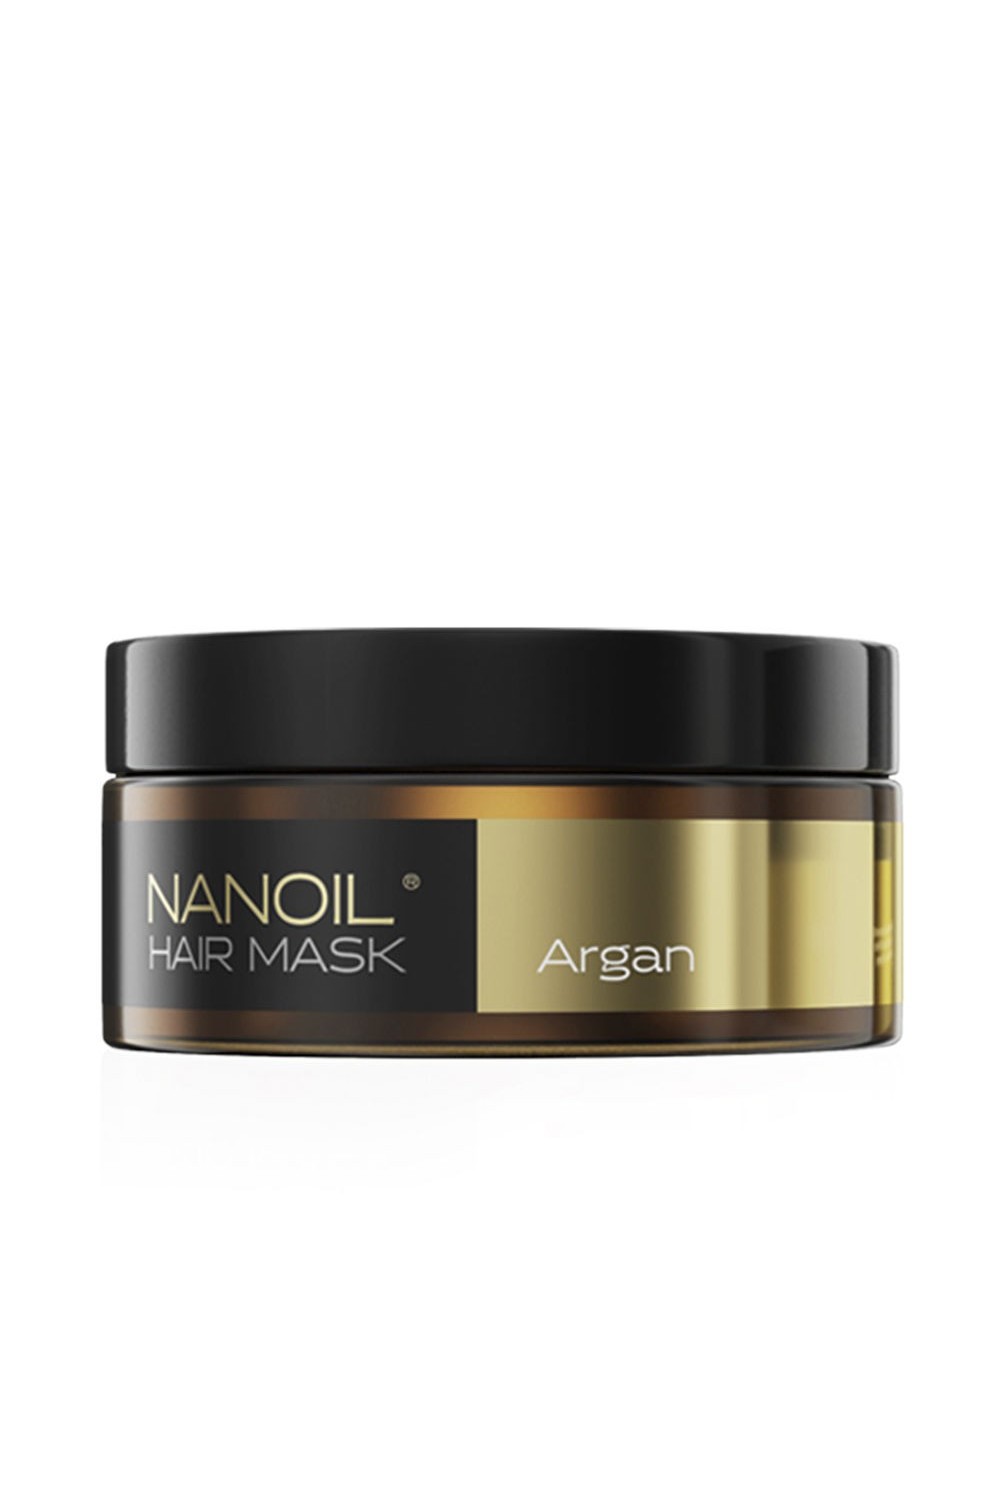 Nanolash Hair Mask Argan 300ml